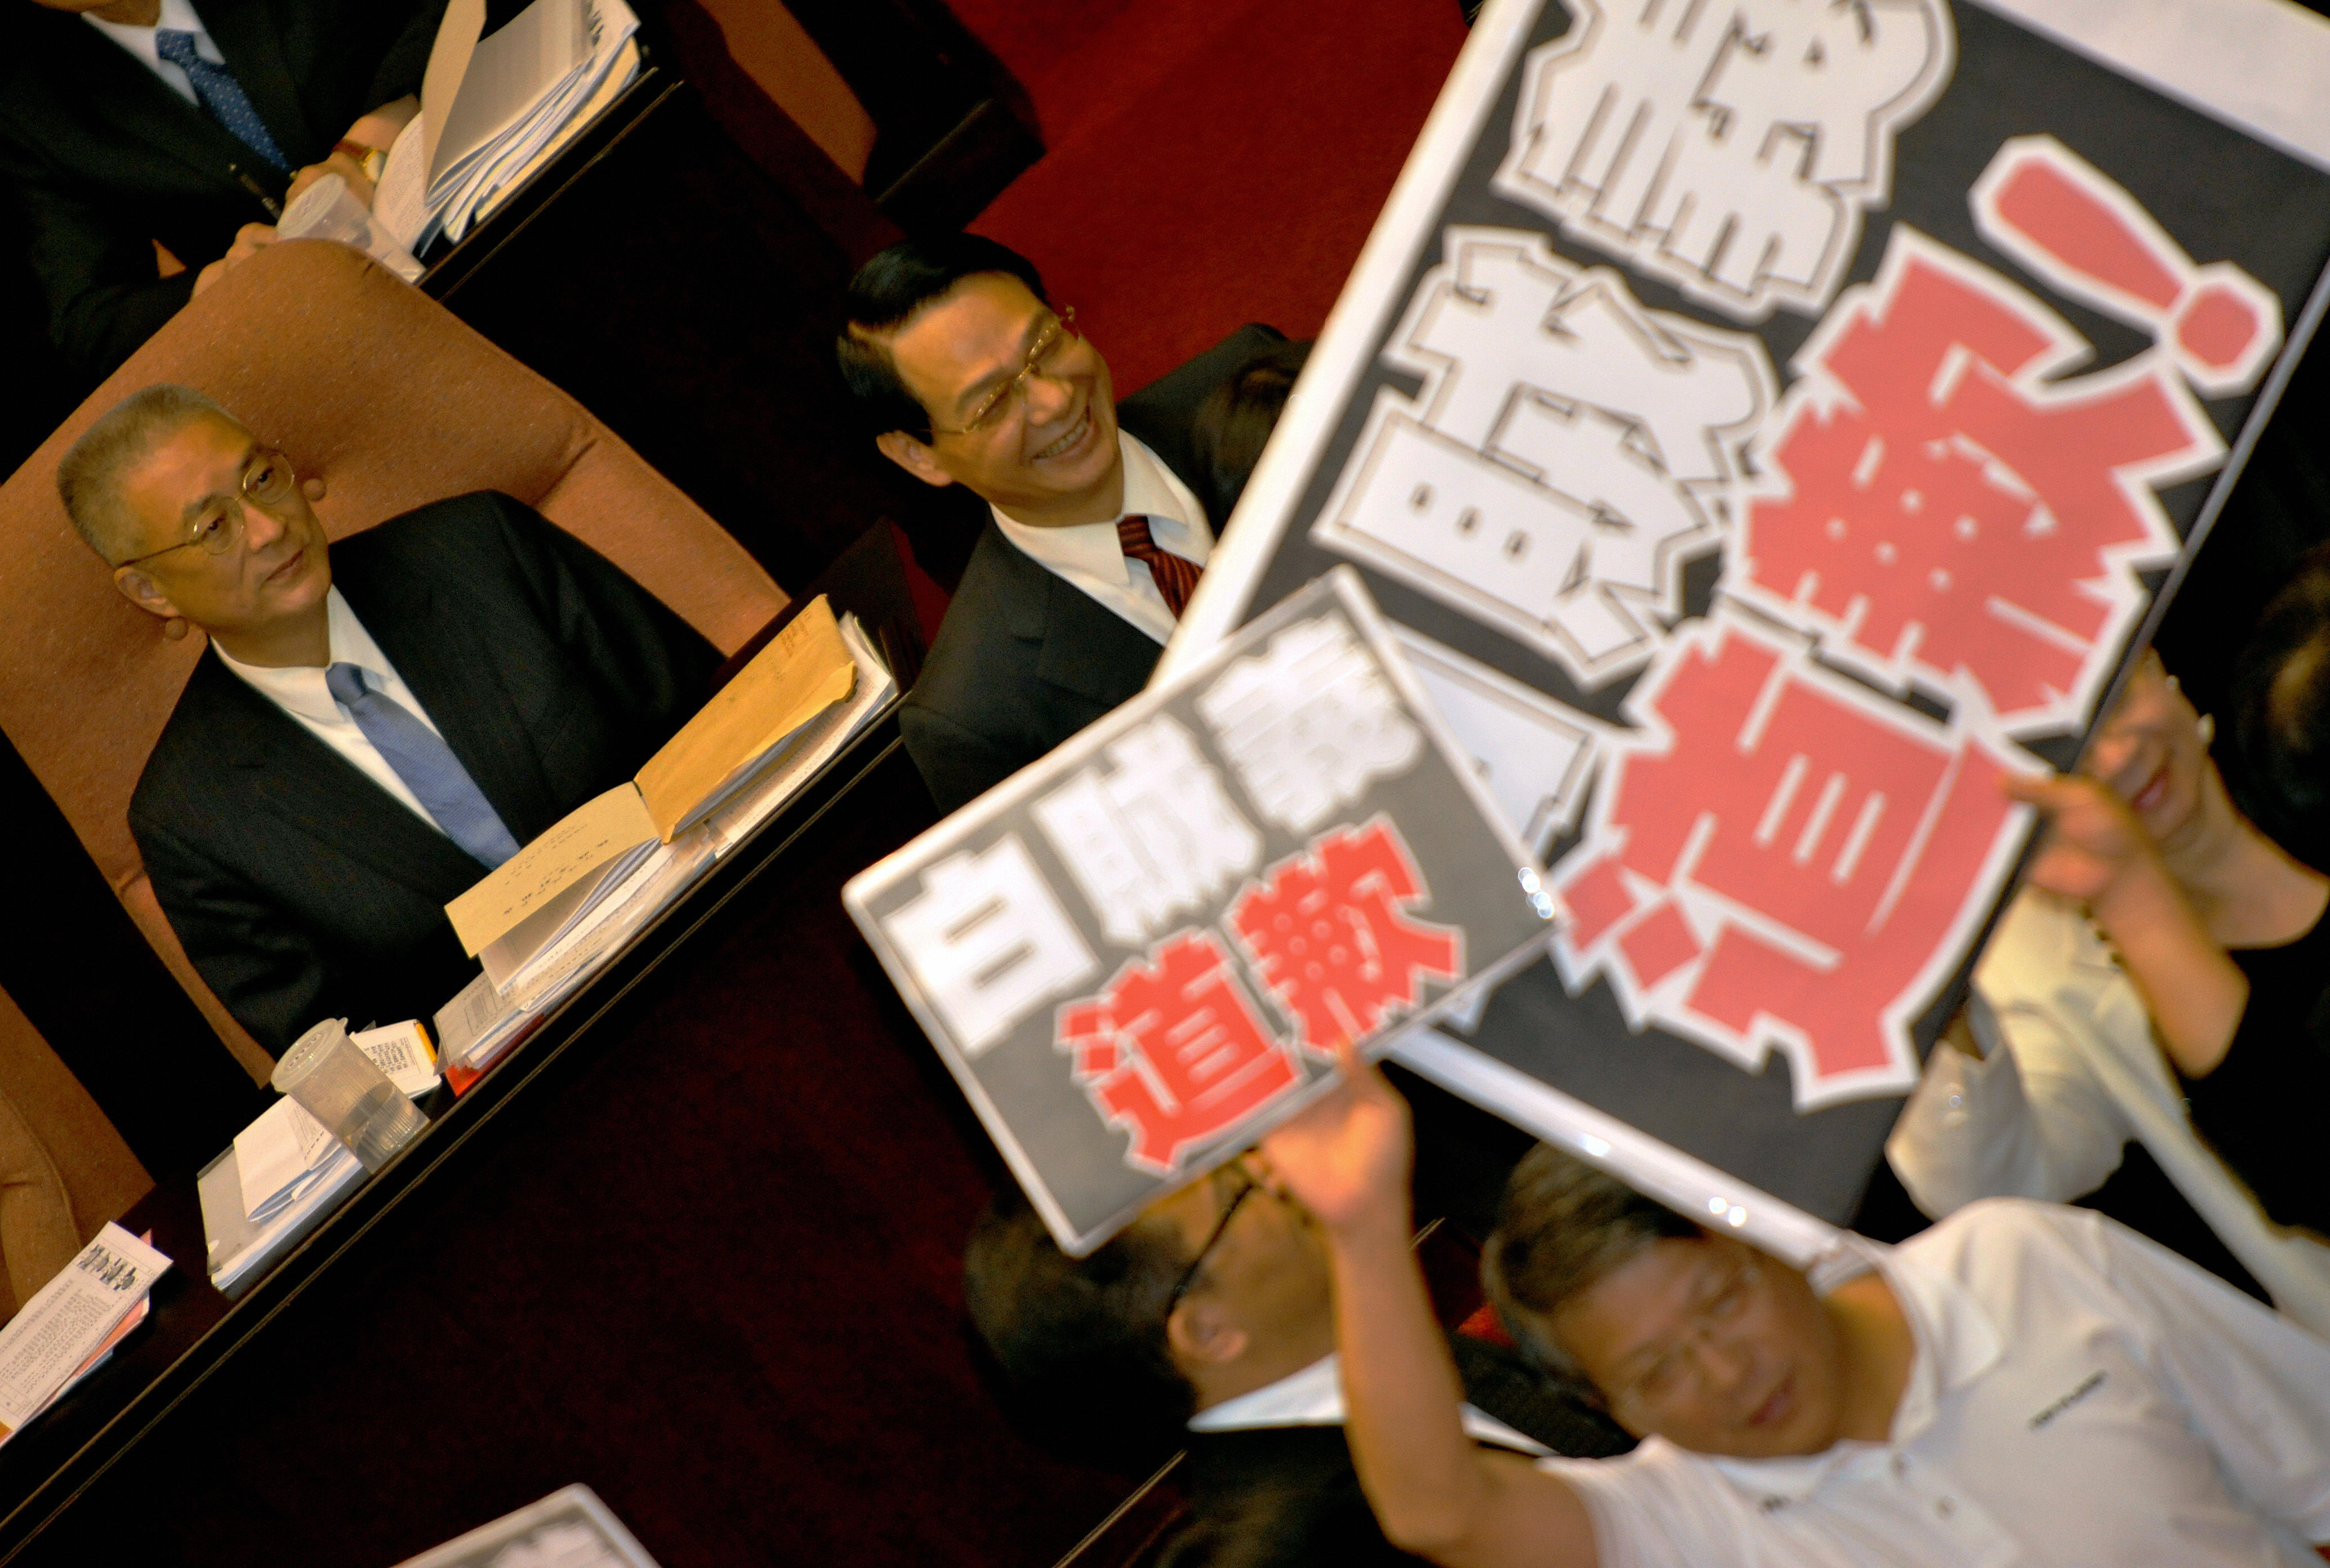 行政院长吴敦义（左）因在接任阁揆前赴香港与香港行政会议召集人梁振英会面，所为何事交代不清，于9月18日立院开议中招致在野党杯葛。